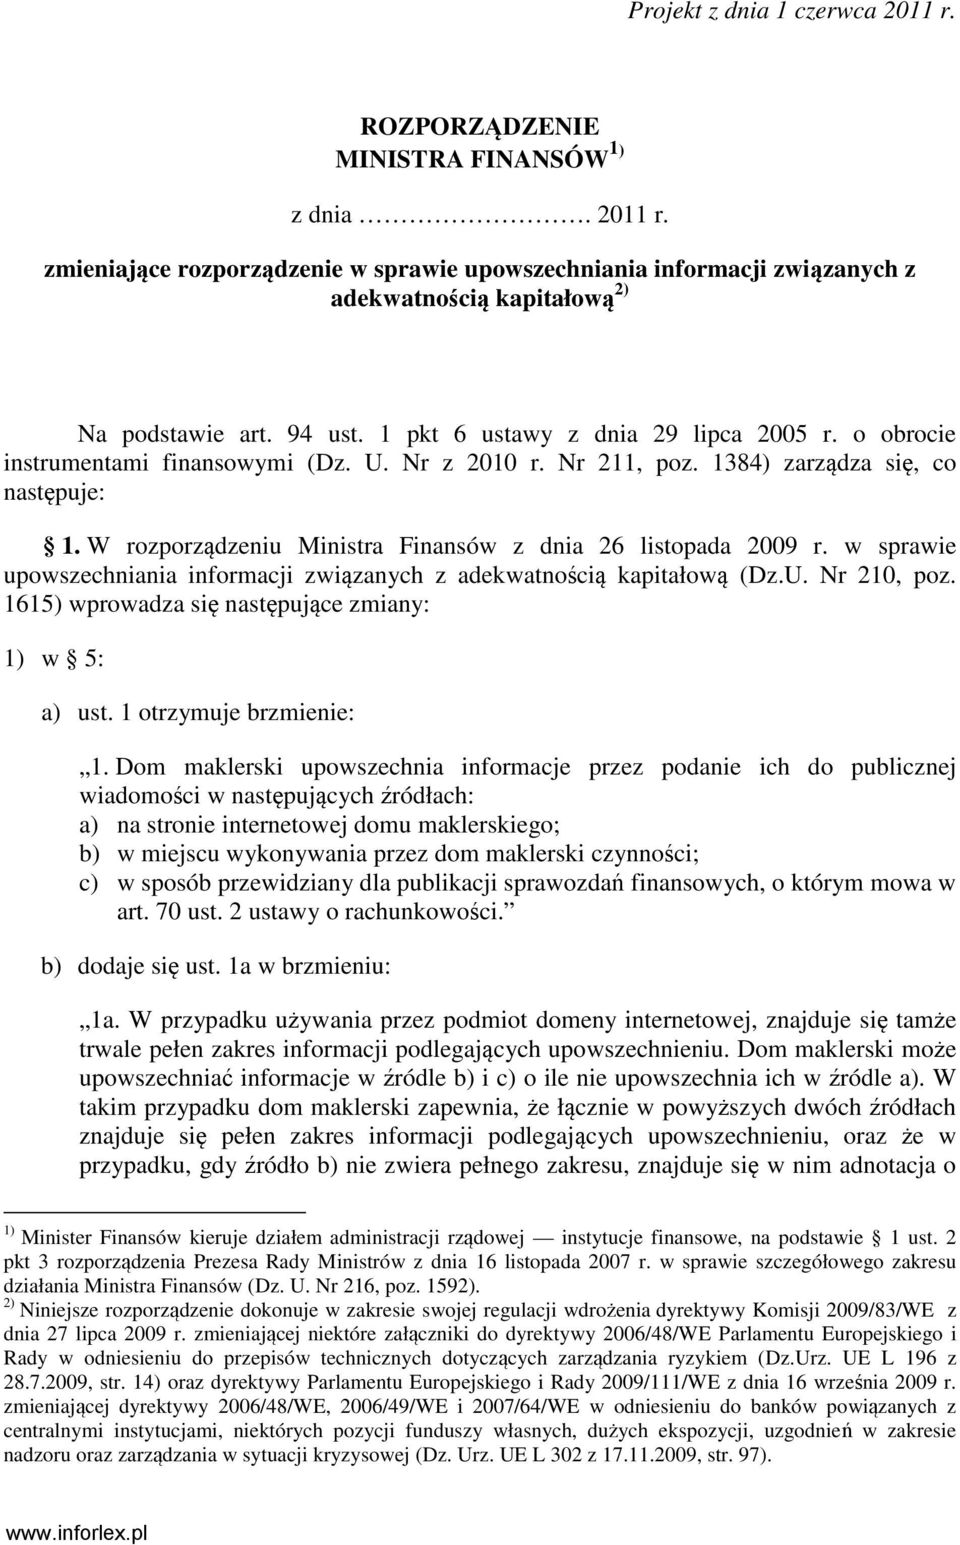 W rozporządzeniu Ministra Finansów z dnia 26 listopada 2009 r. w sprawie upowszechniania informacji związanych z adekwatnością kapitałową (Dz.U. Nr 210, poz.